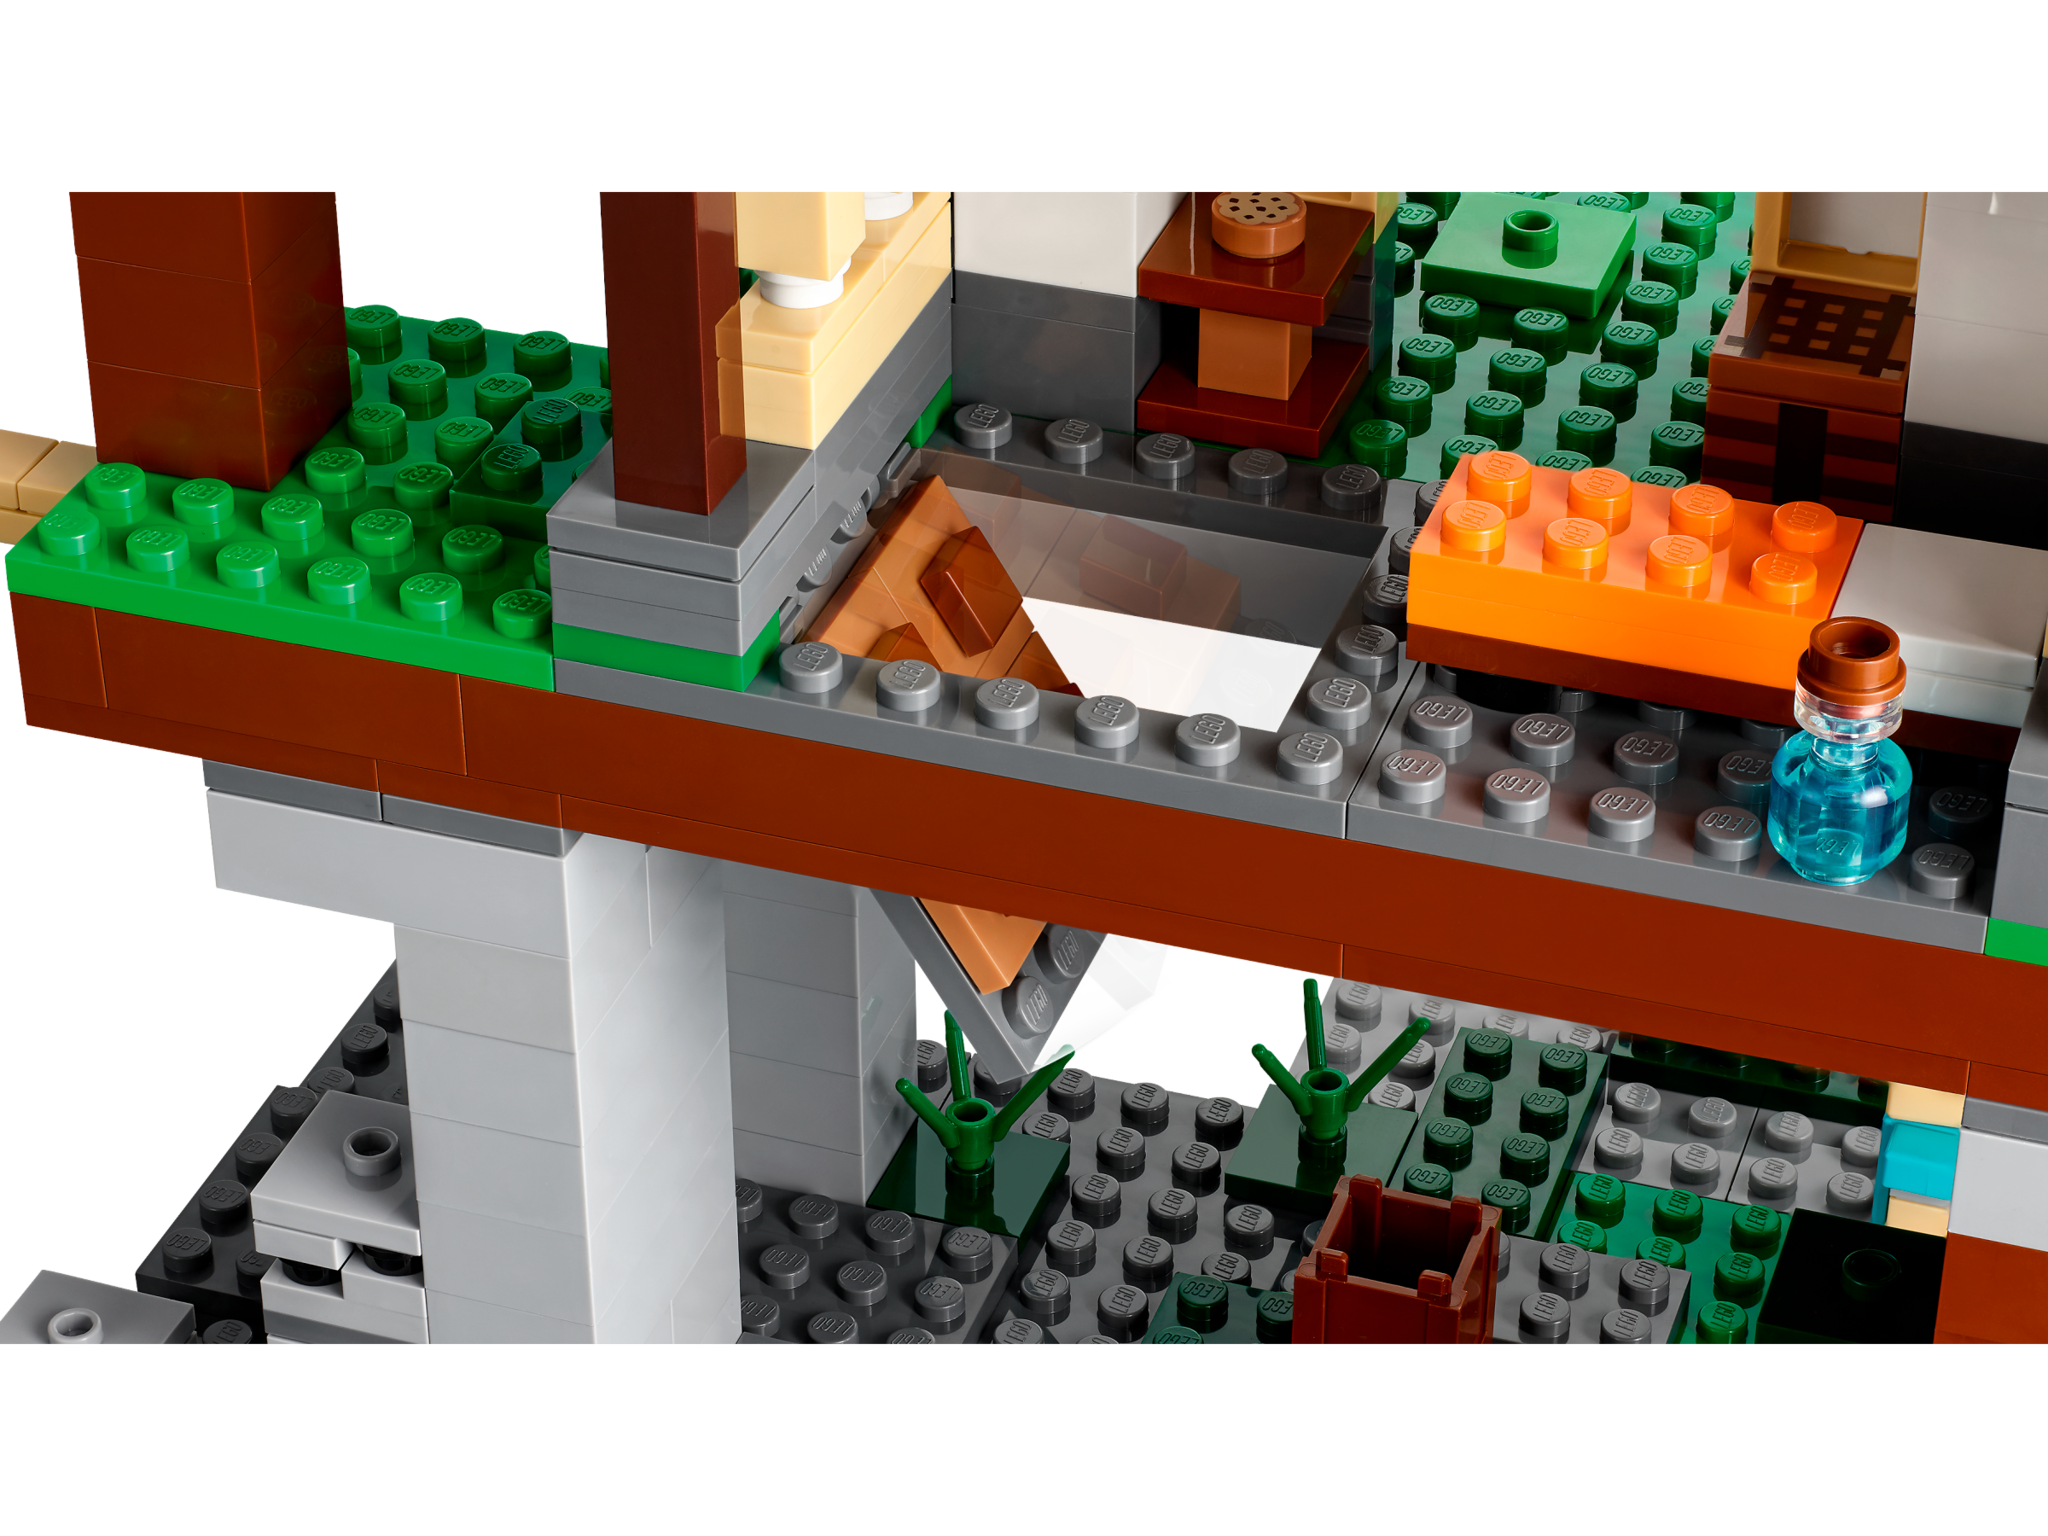 Lego Lego Minecraft 21183 - Le camp d'entraînement